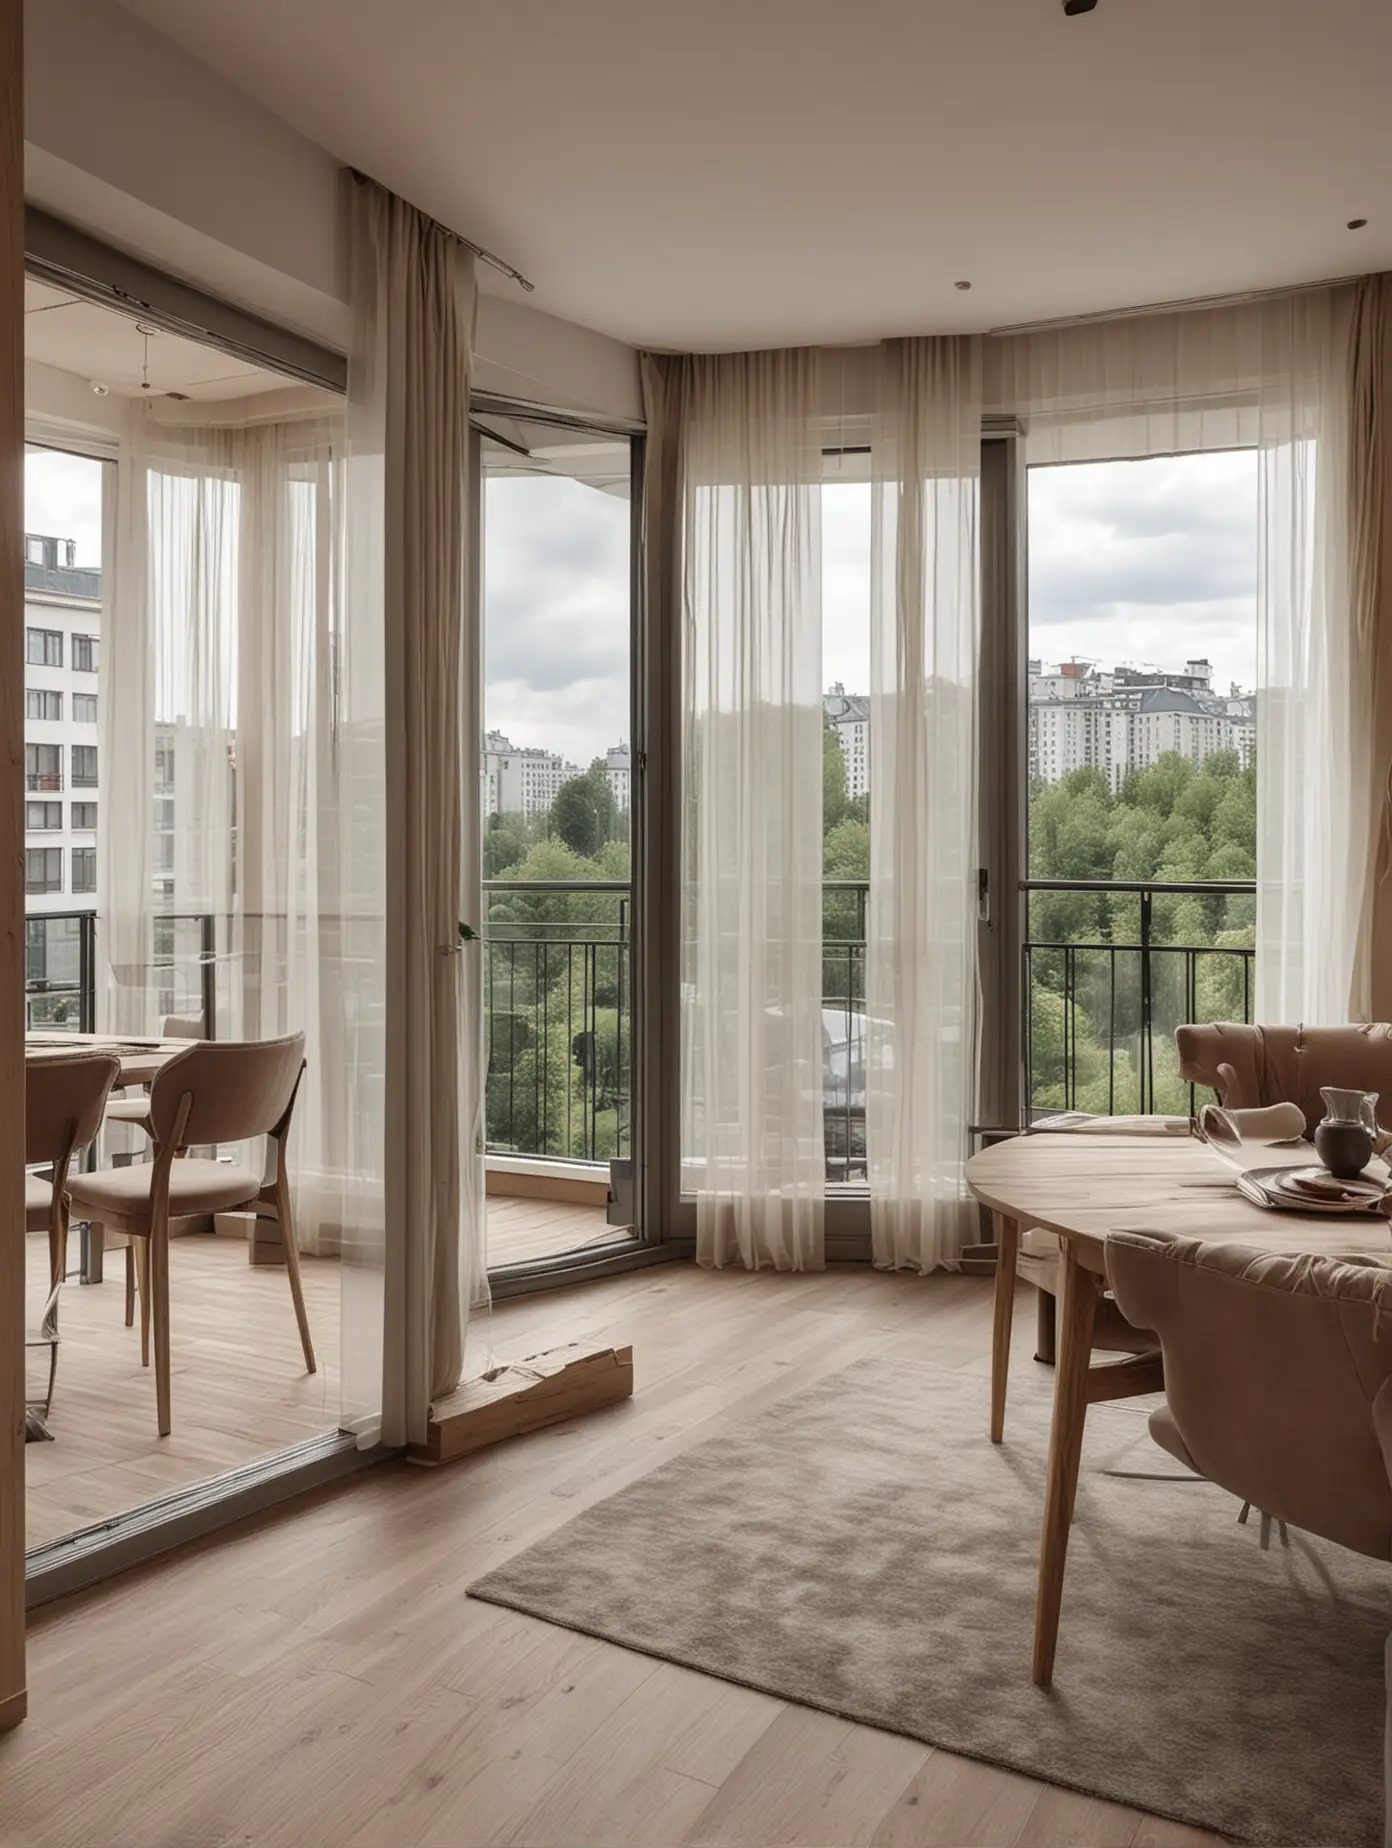 Квартира с террасой, Екатерибург,  вид из окна на дорогу,  современный стильный интерьер, детализация,  естественная цветовая гамма, люкс, премиум сегмент 